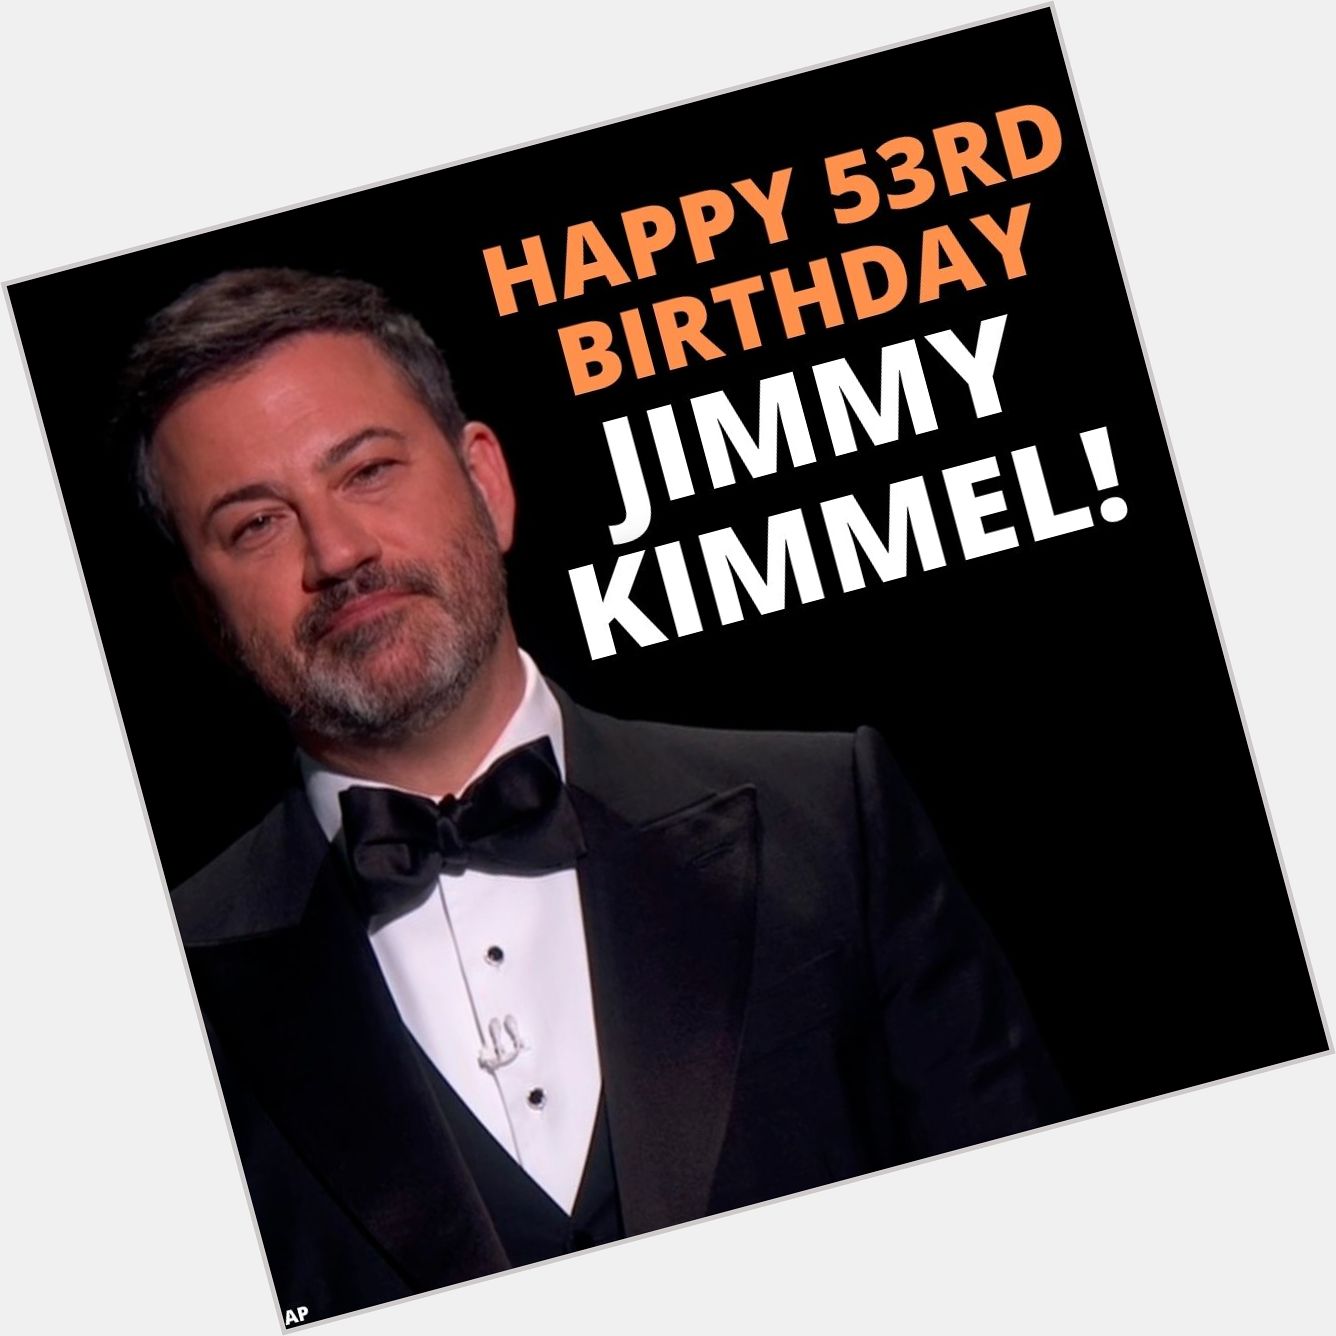 Happy birthday to Jimmy Kimmel! 